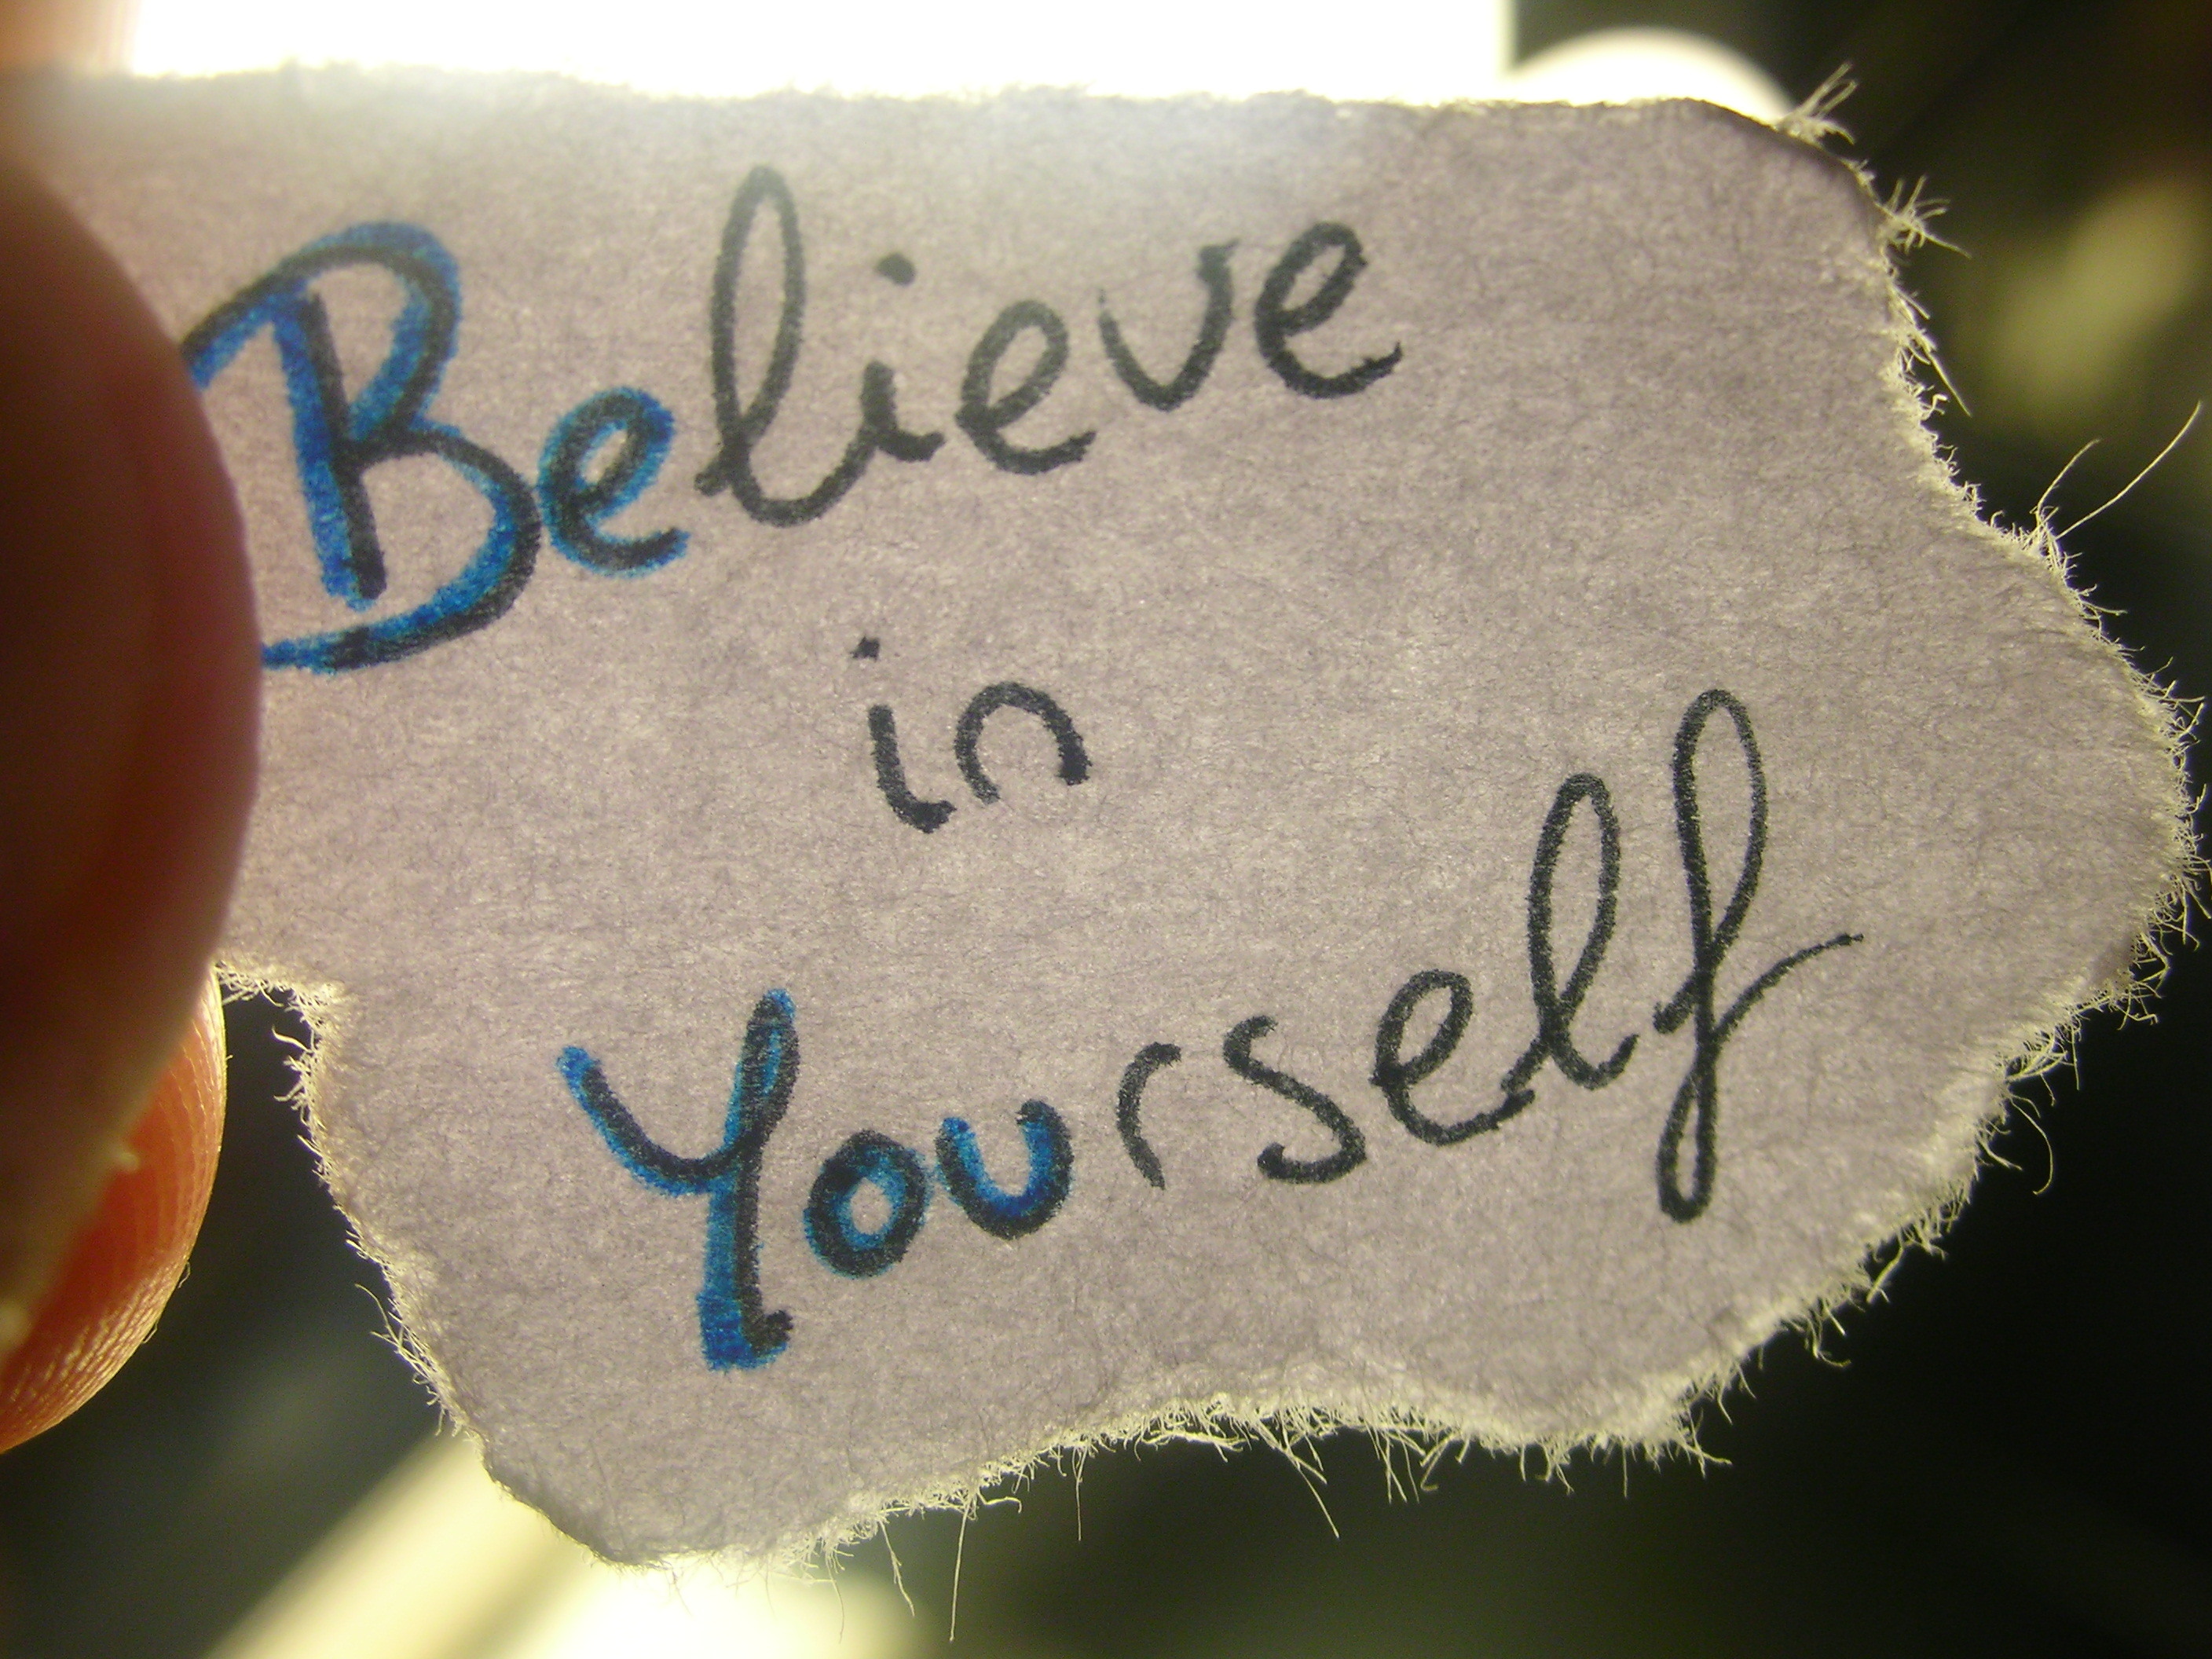 believe_in_yourself_20190223211042f94.jpg